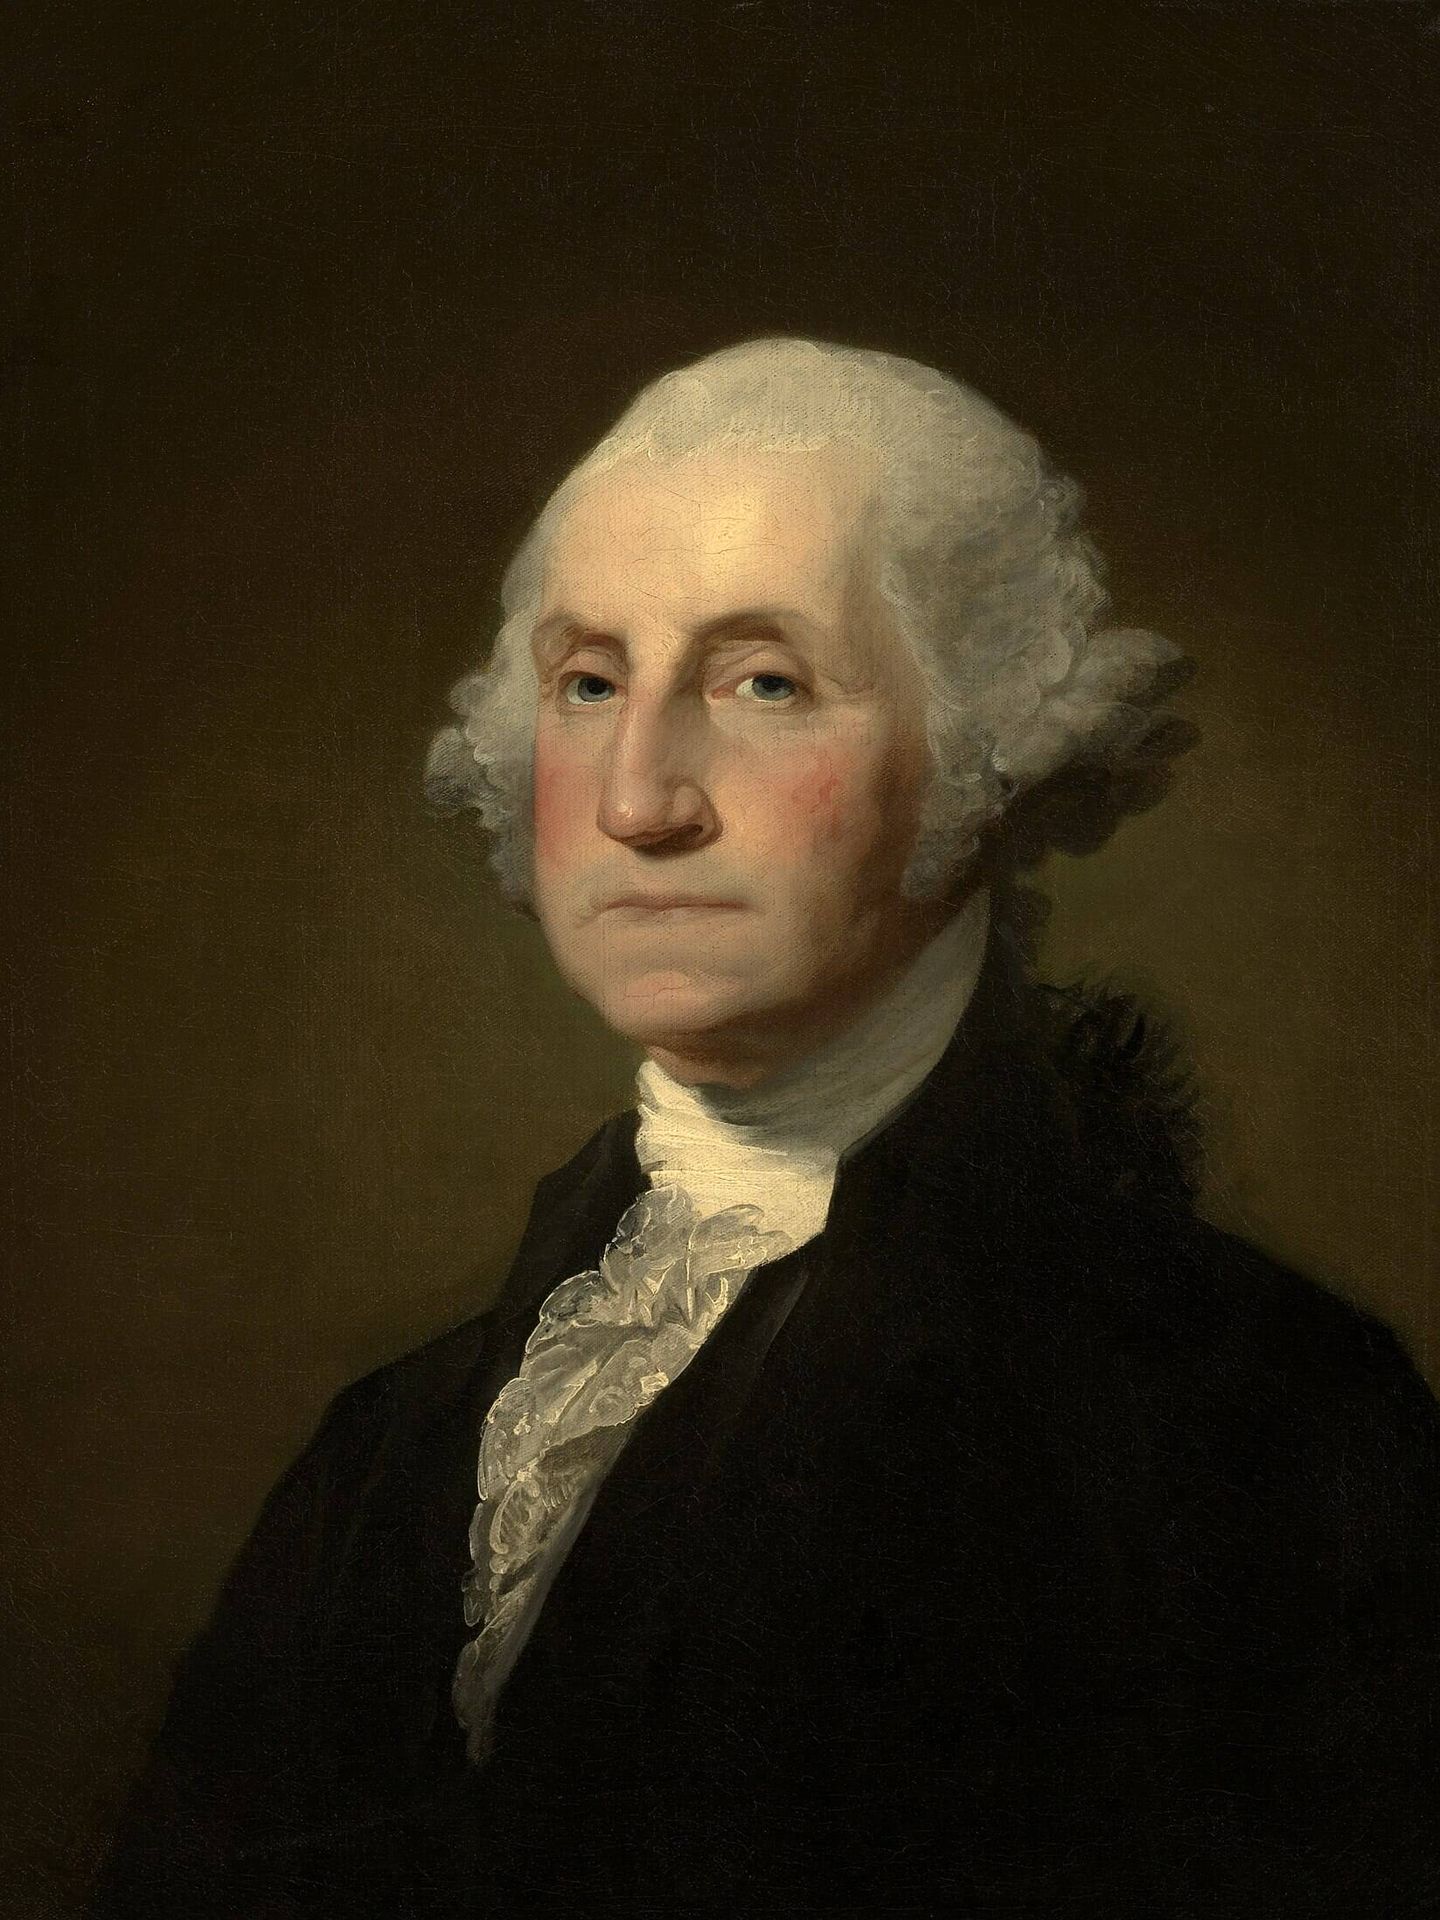 Retrato de George Washington, cuyo pelo viajará al espacio profundo a 300 millones de kilómetros de la Tierra. (Gilbert Stuart)